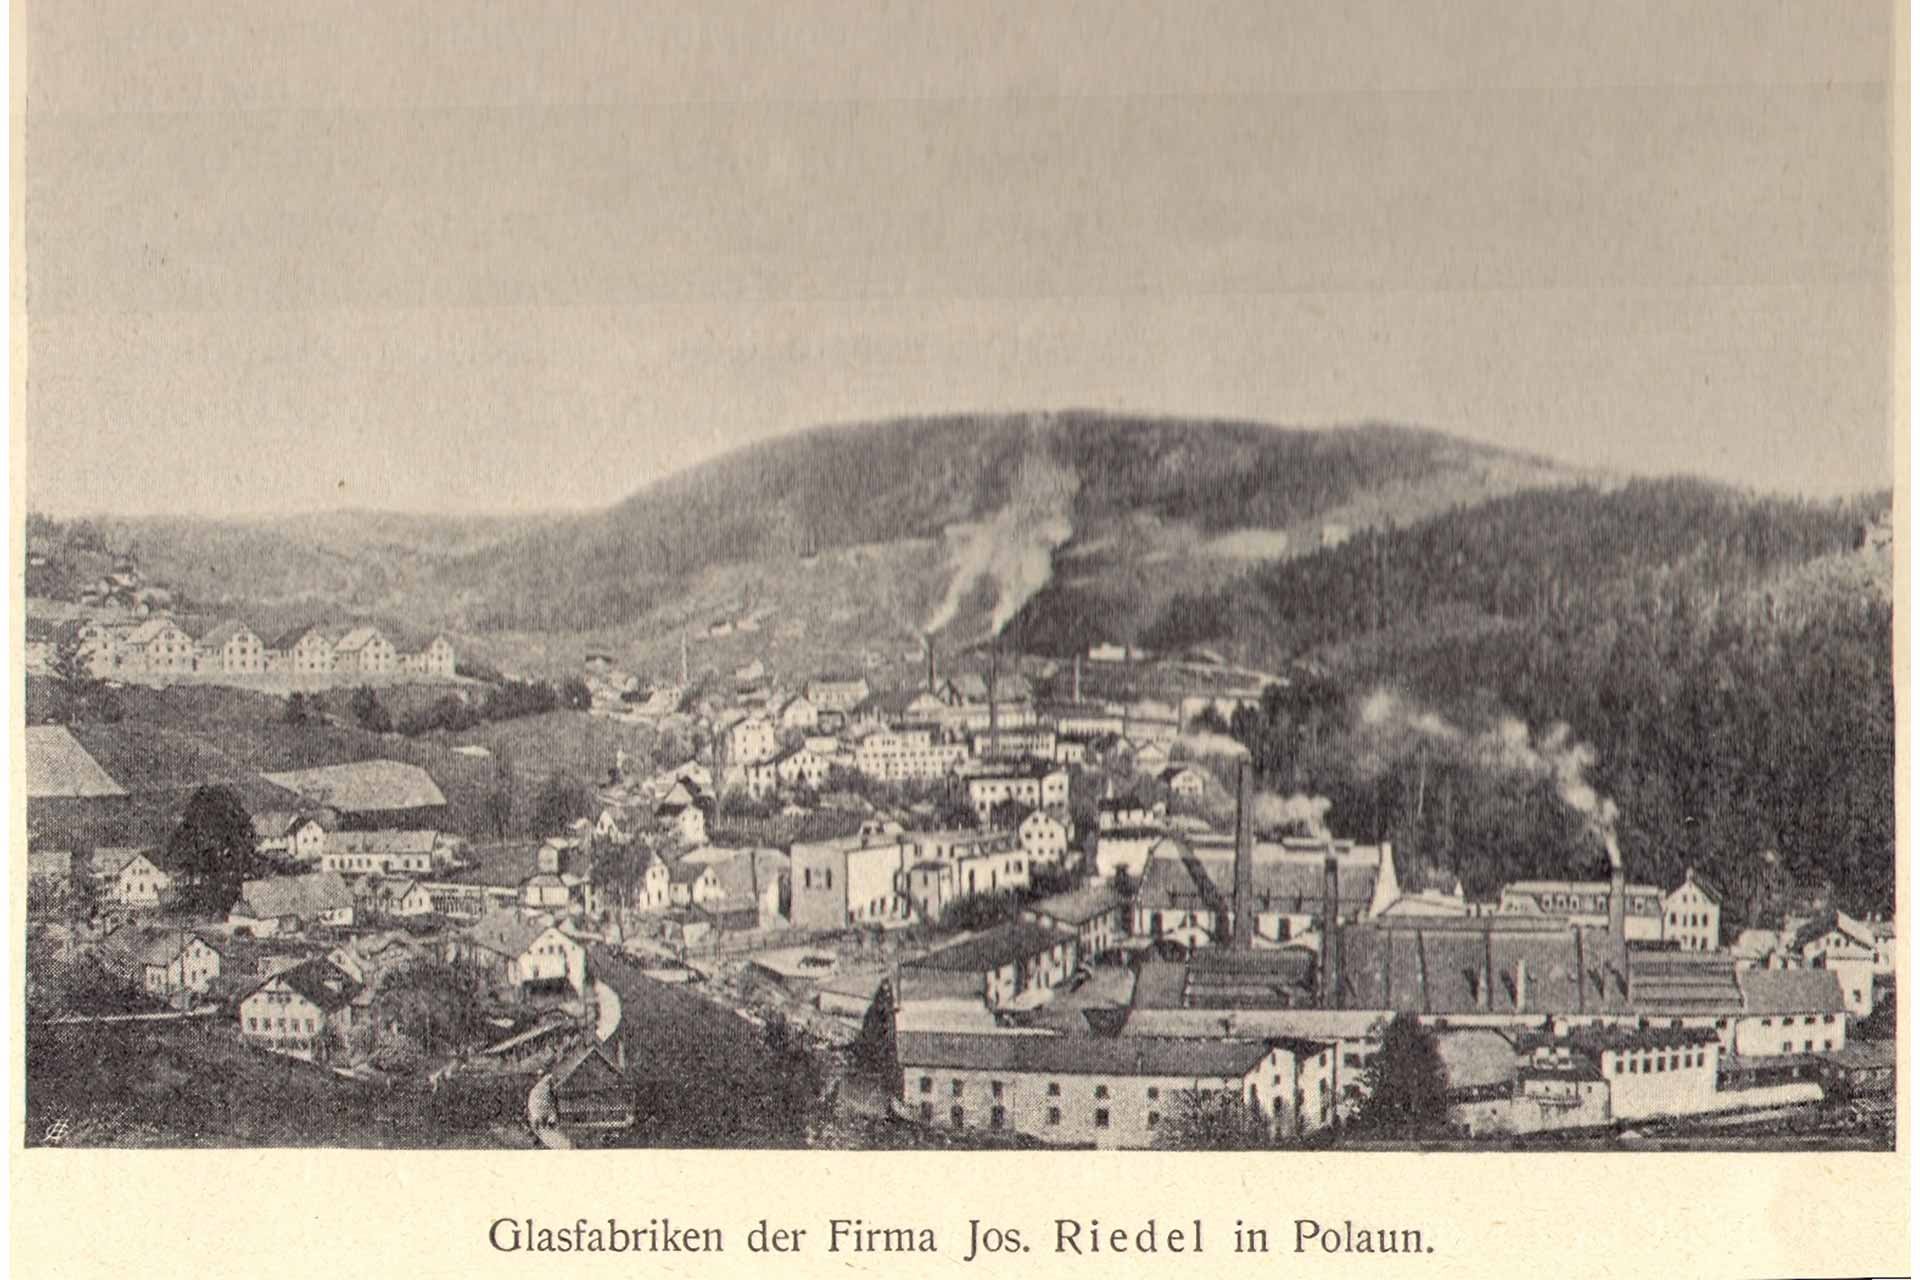 Einst stand das Werk der Familie Riedel im böhmischen Polaun (unten).